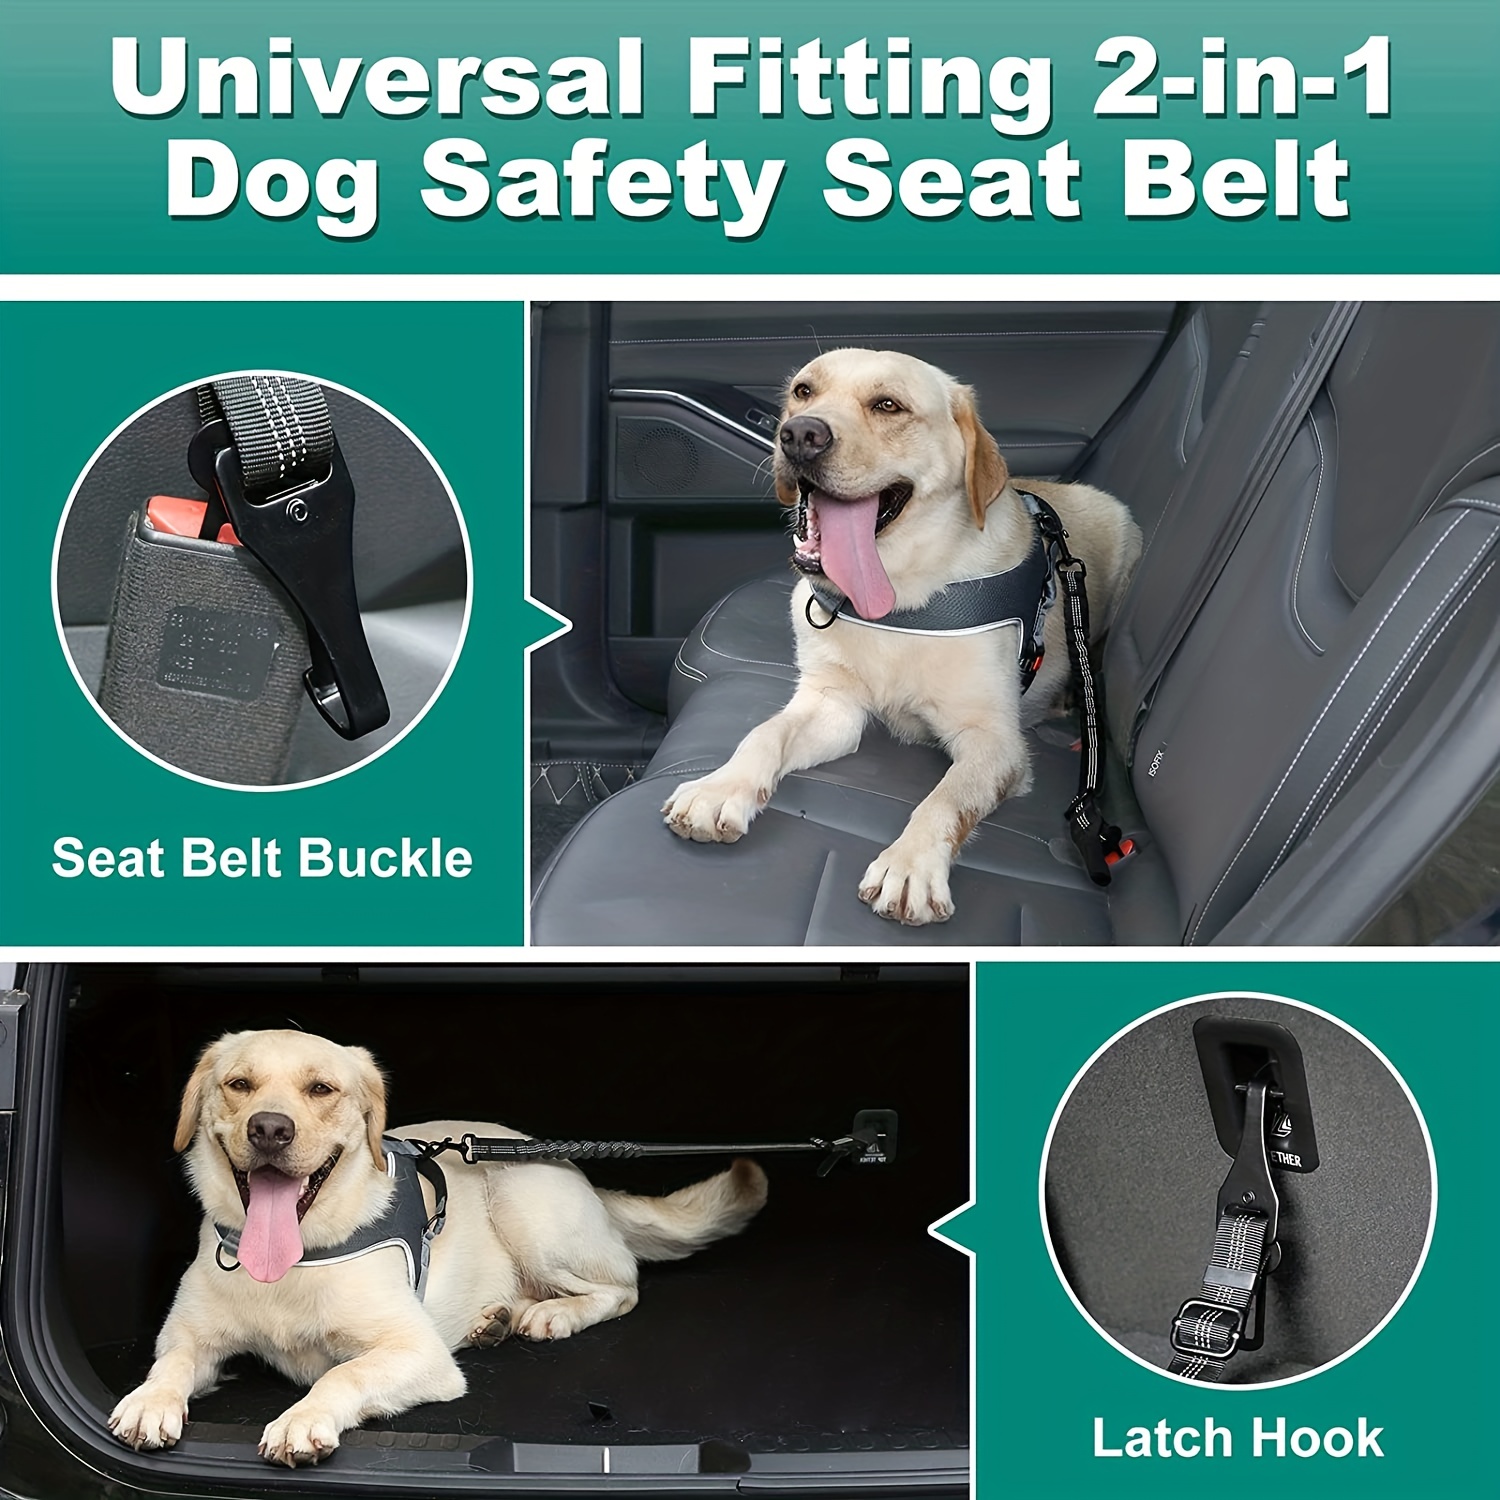 Ceinture de sécurité pour chien, 2 pack réglable ceinture de